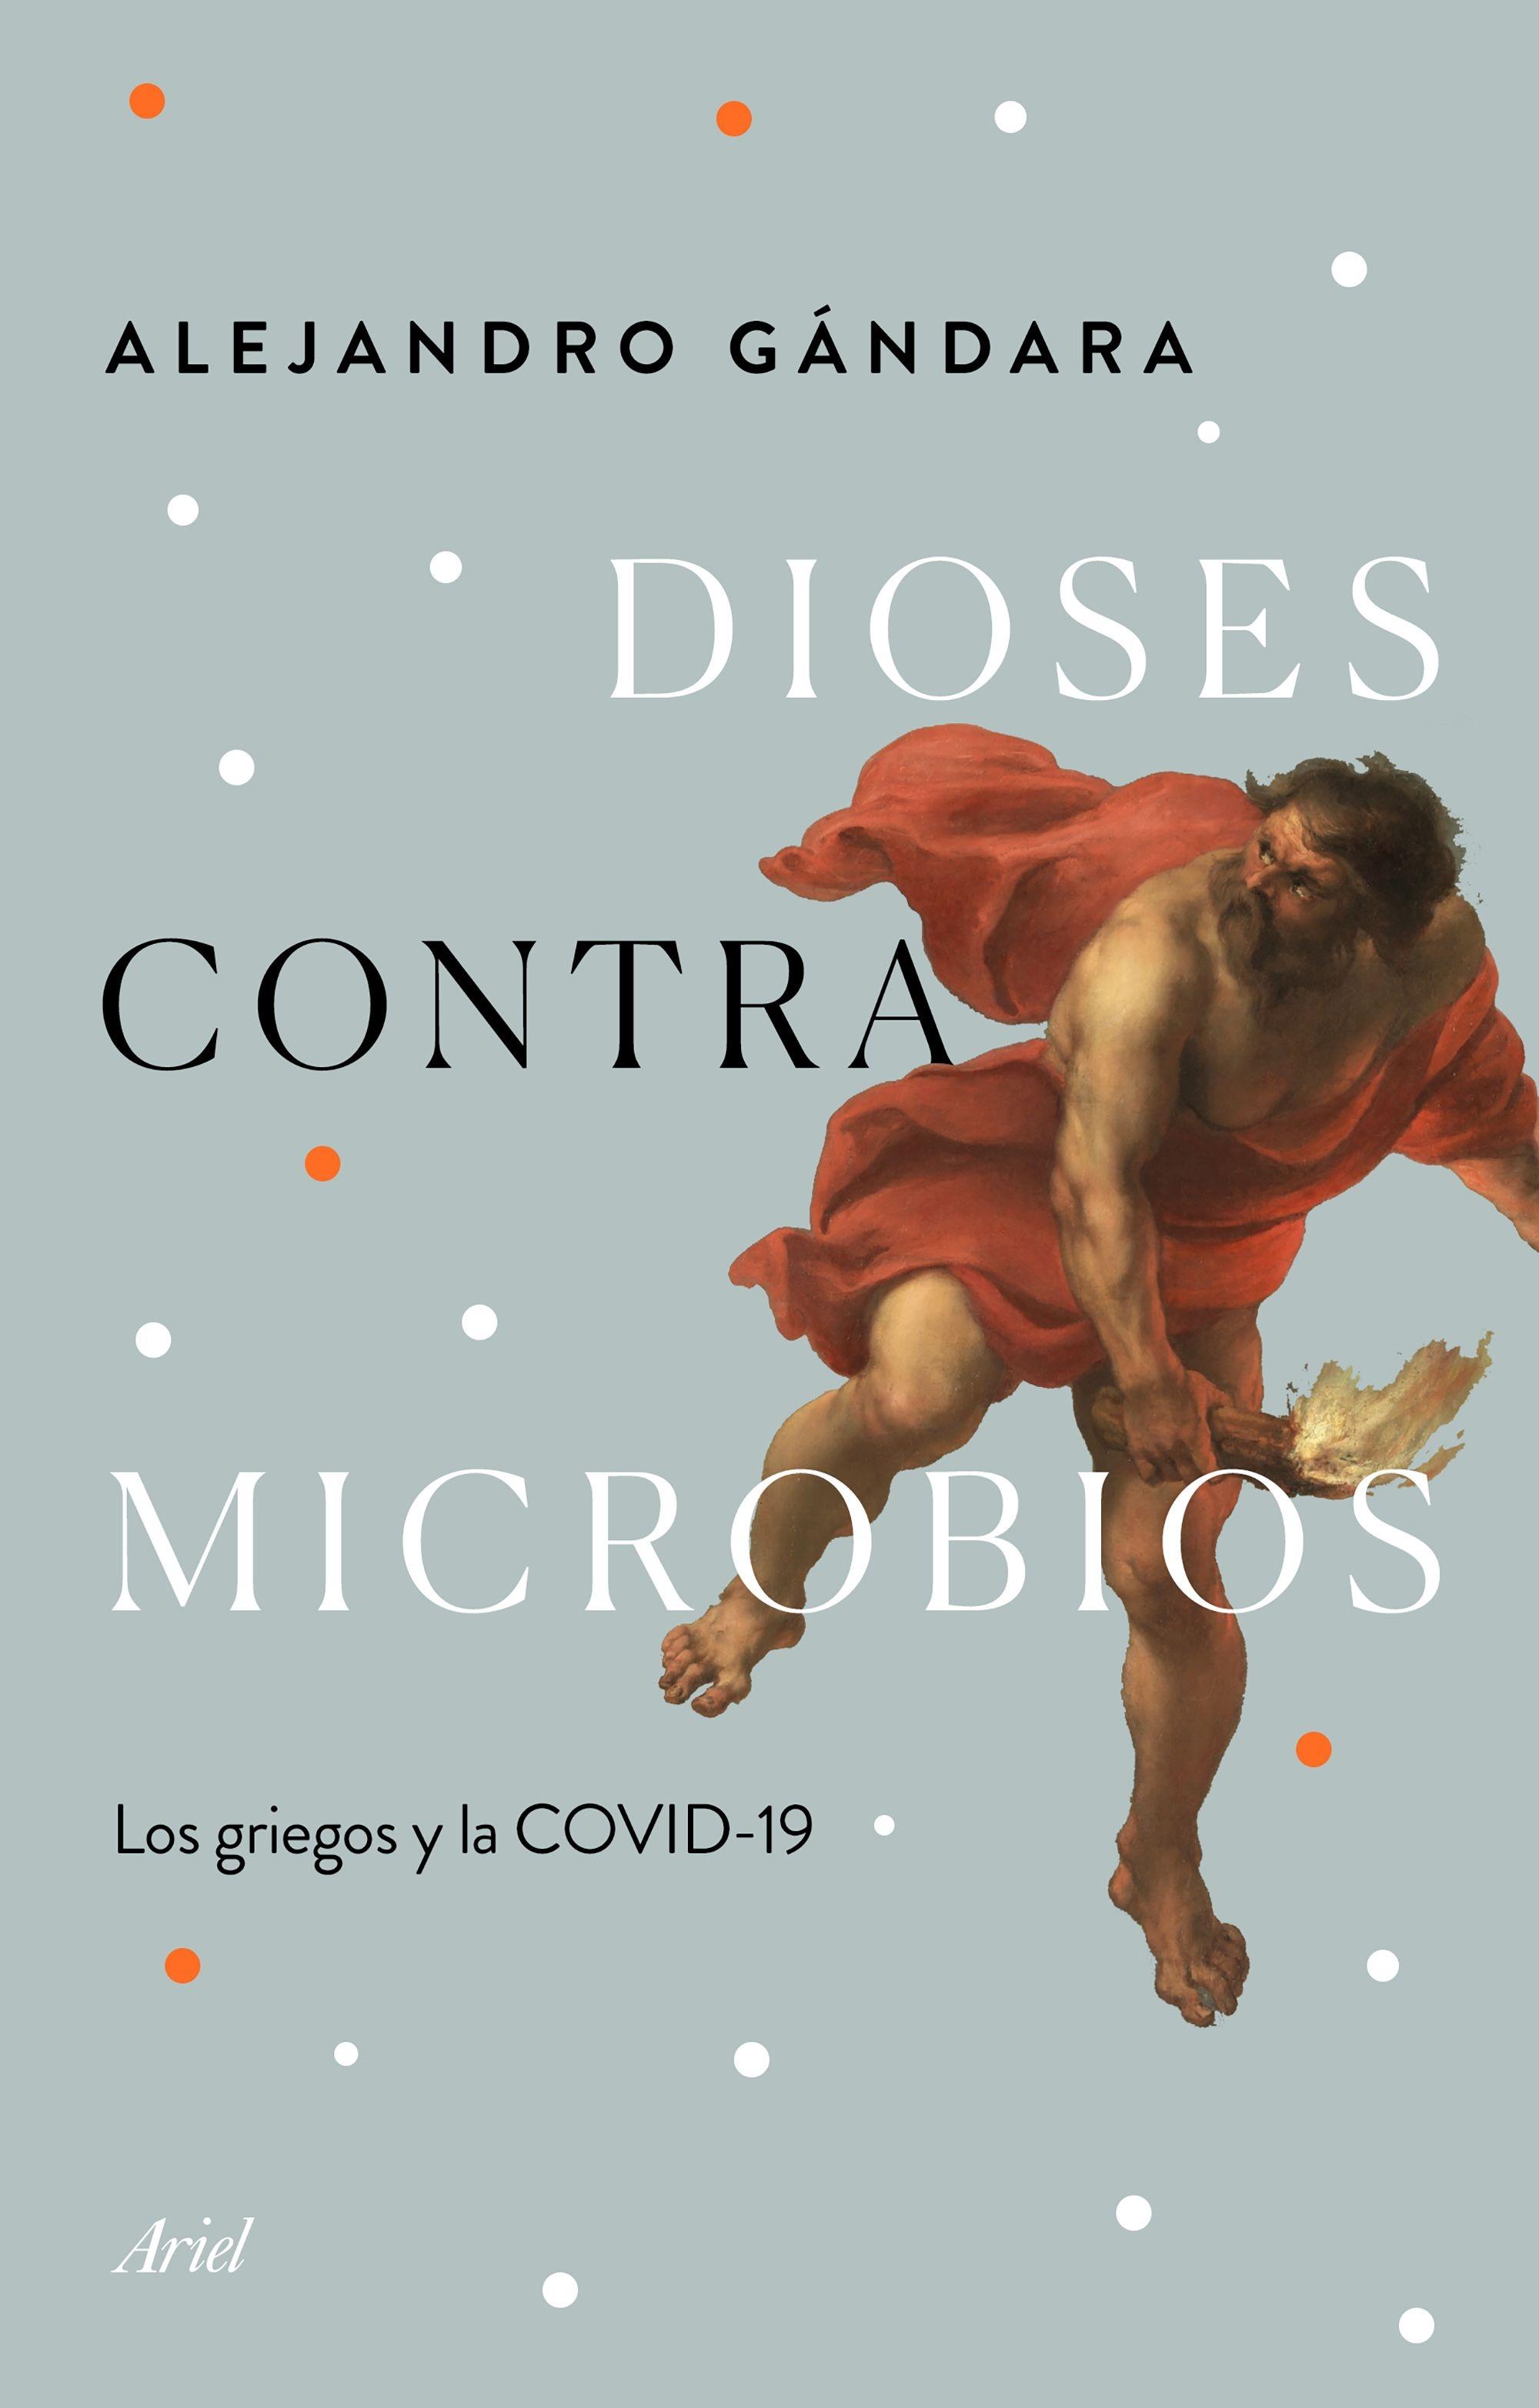 Dioses contra microbios "Los griegos y la COVID-19"